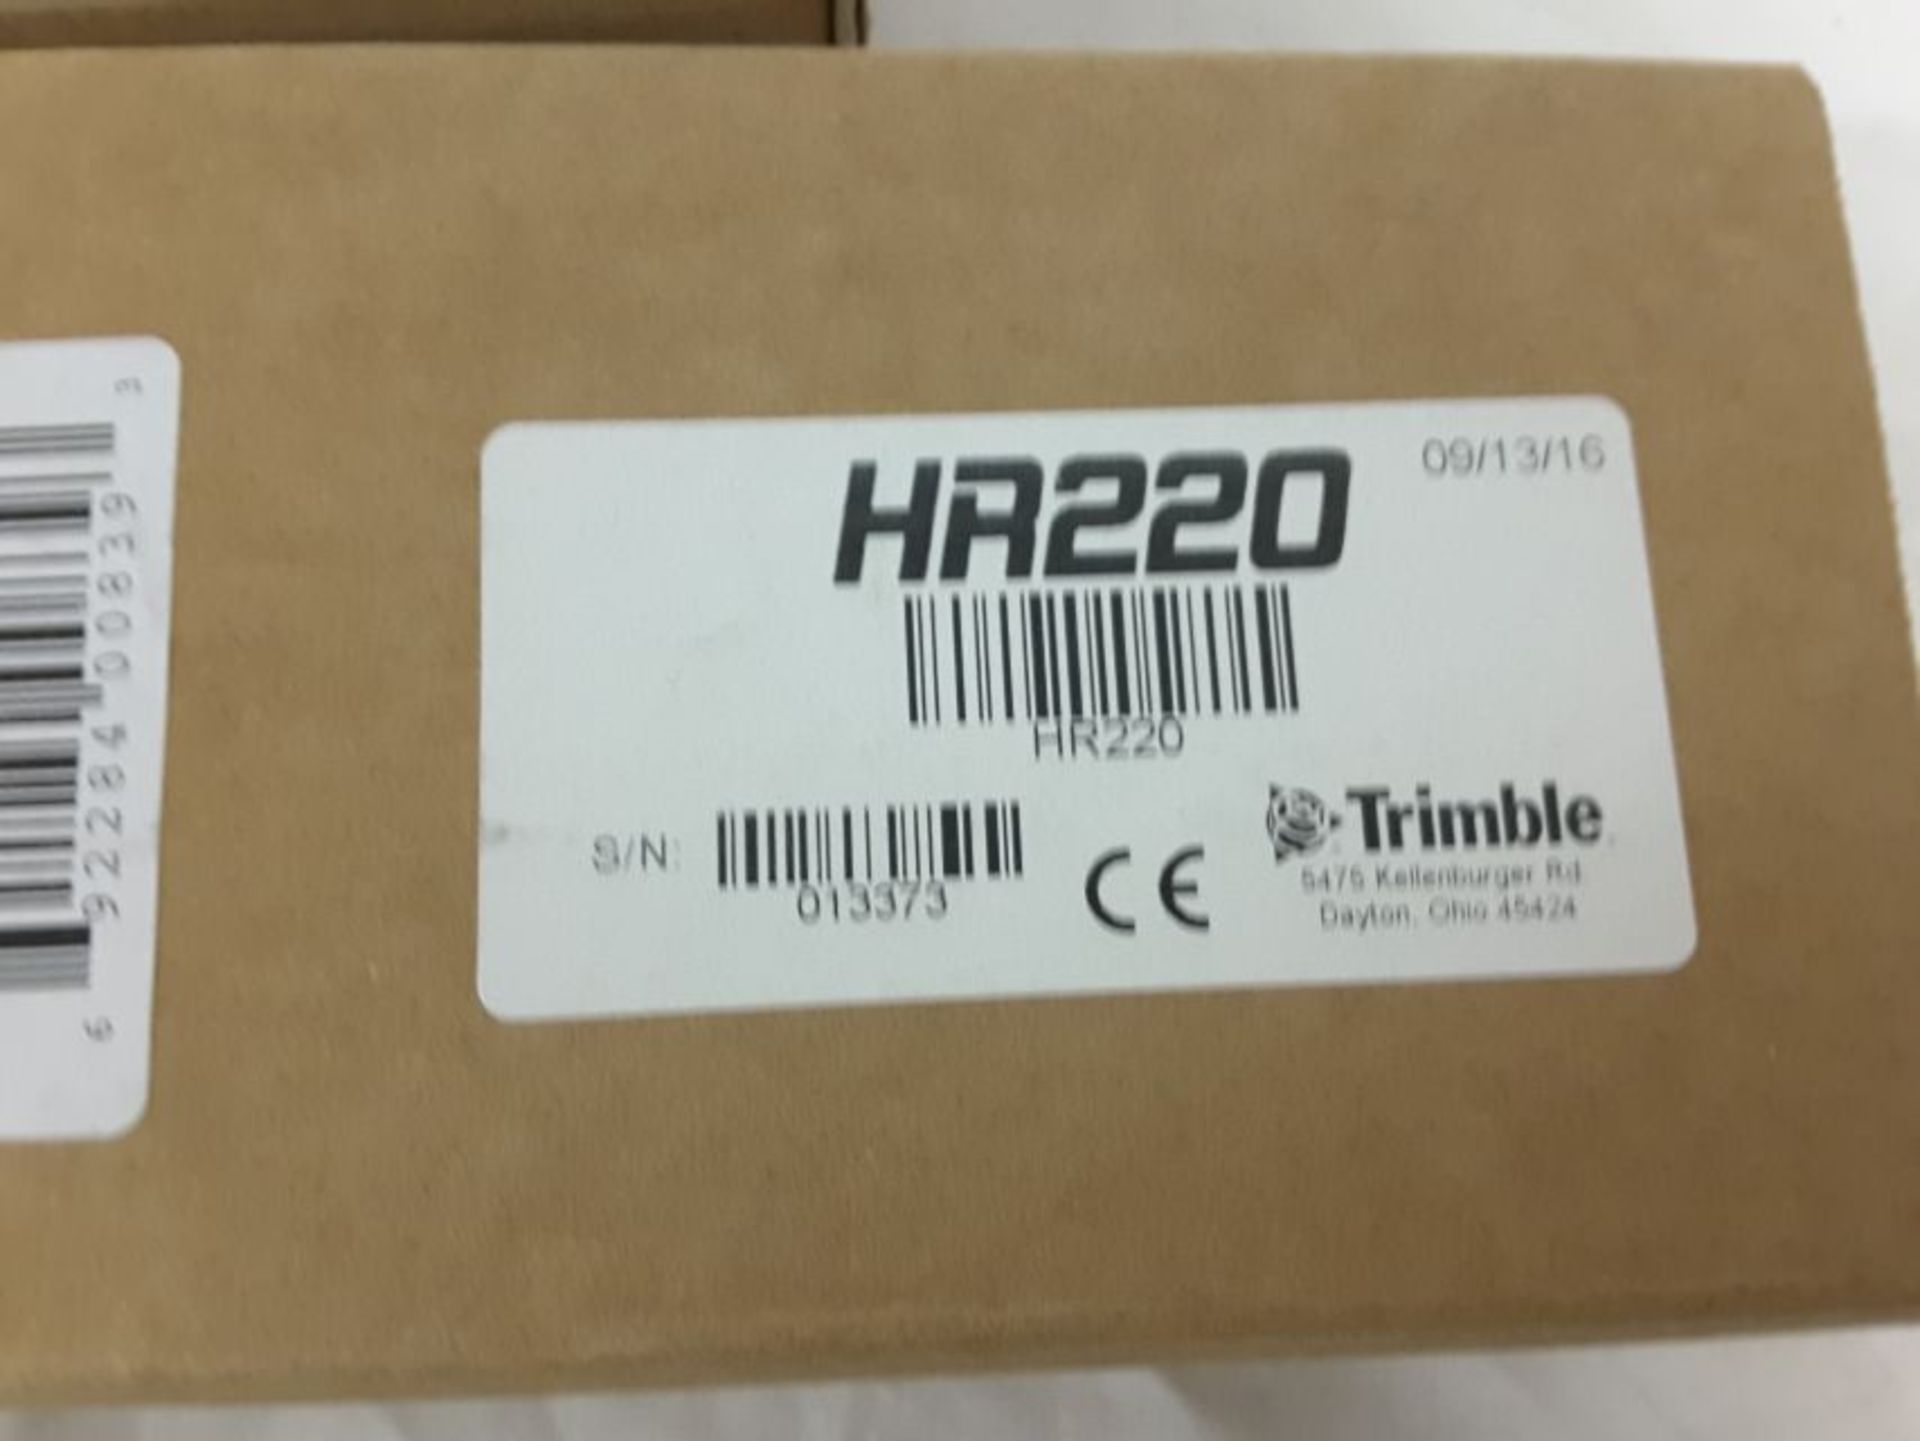 (3) laser receivers to include: Trimble HR 320, Trimble HR 220, Trimble HR 150U